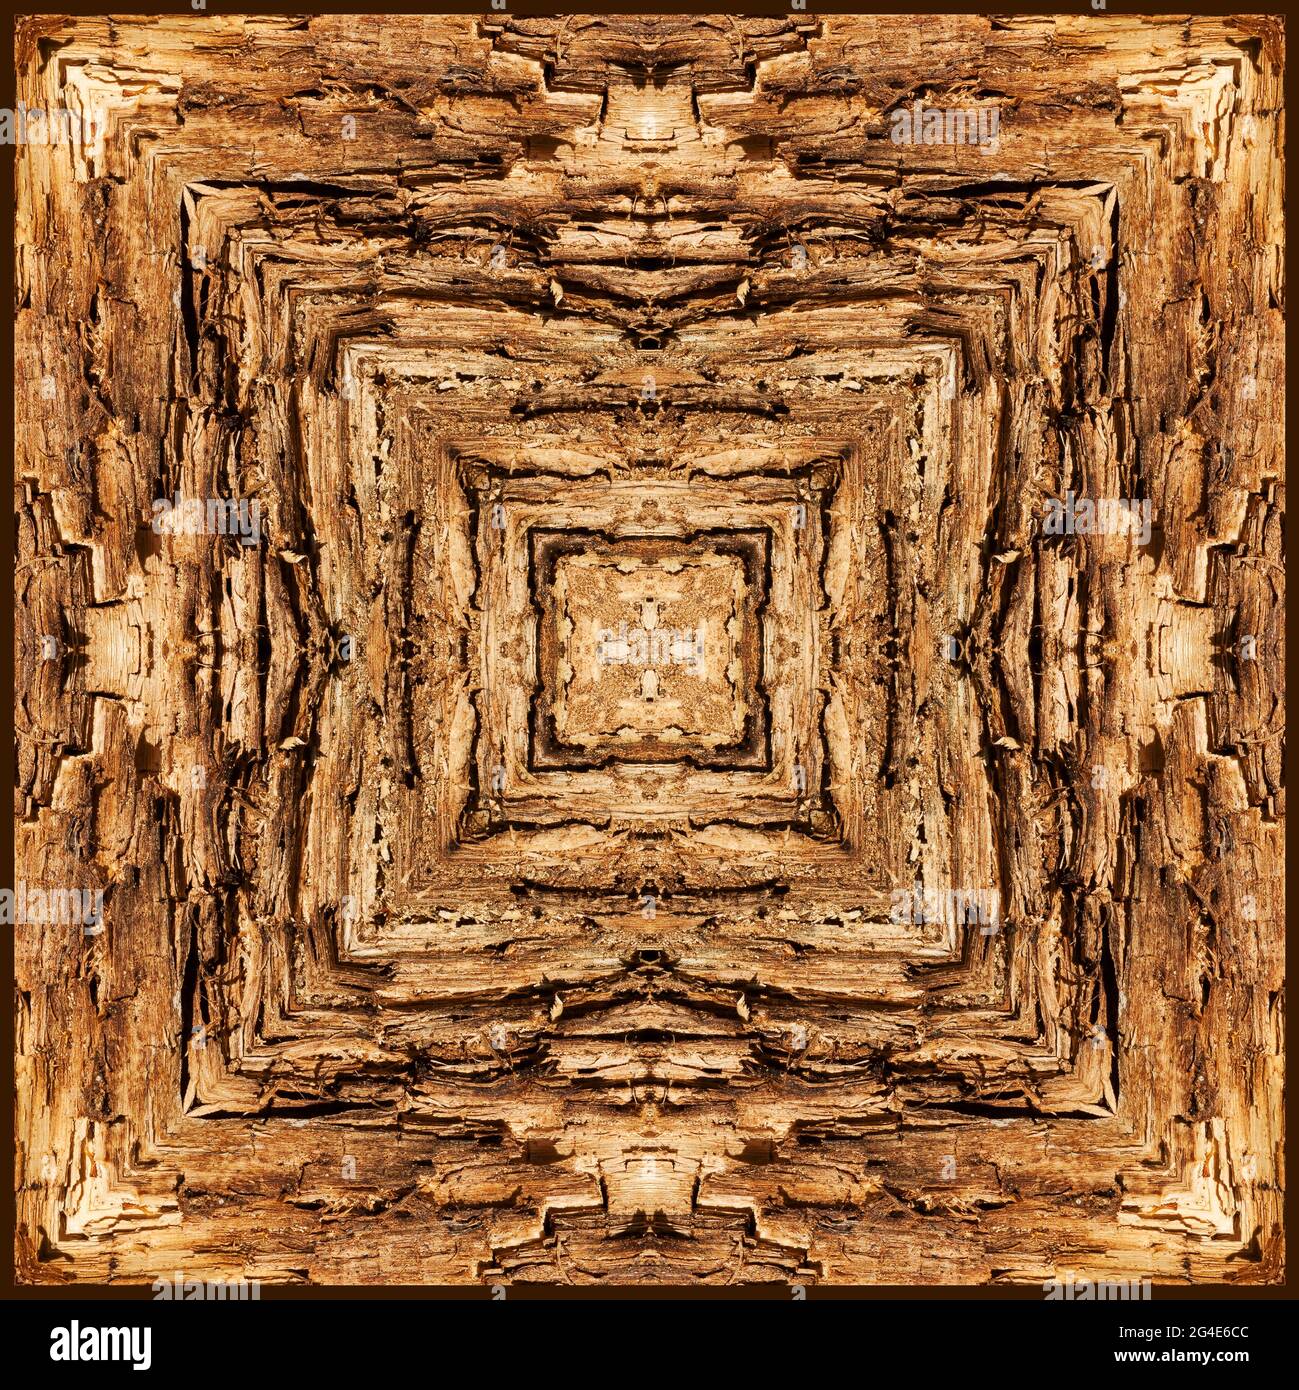 Kaleidoscope of rotting wood Stock Photo